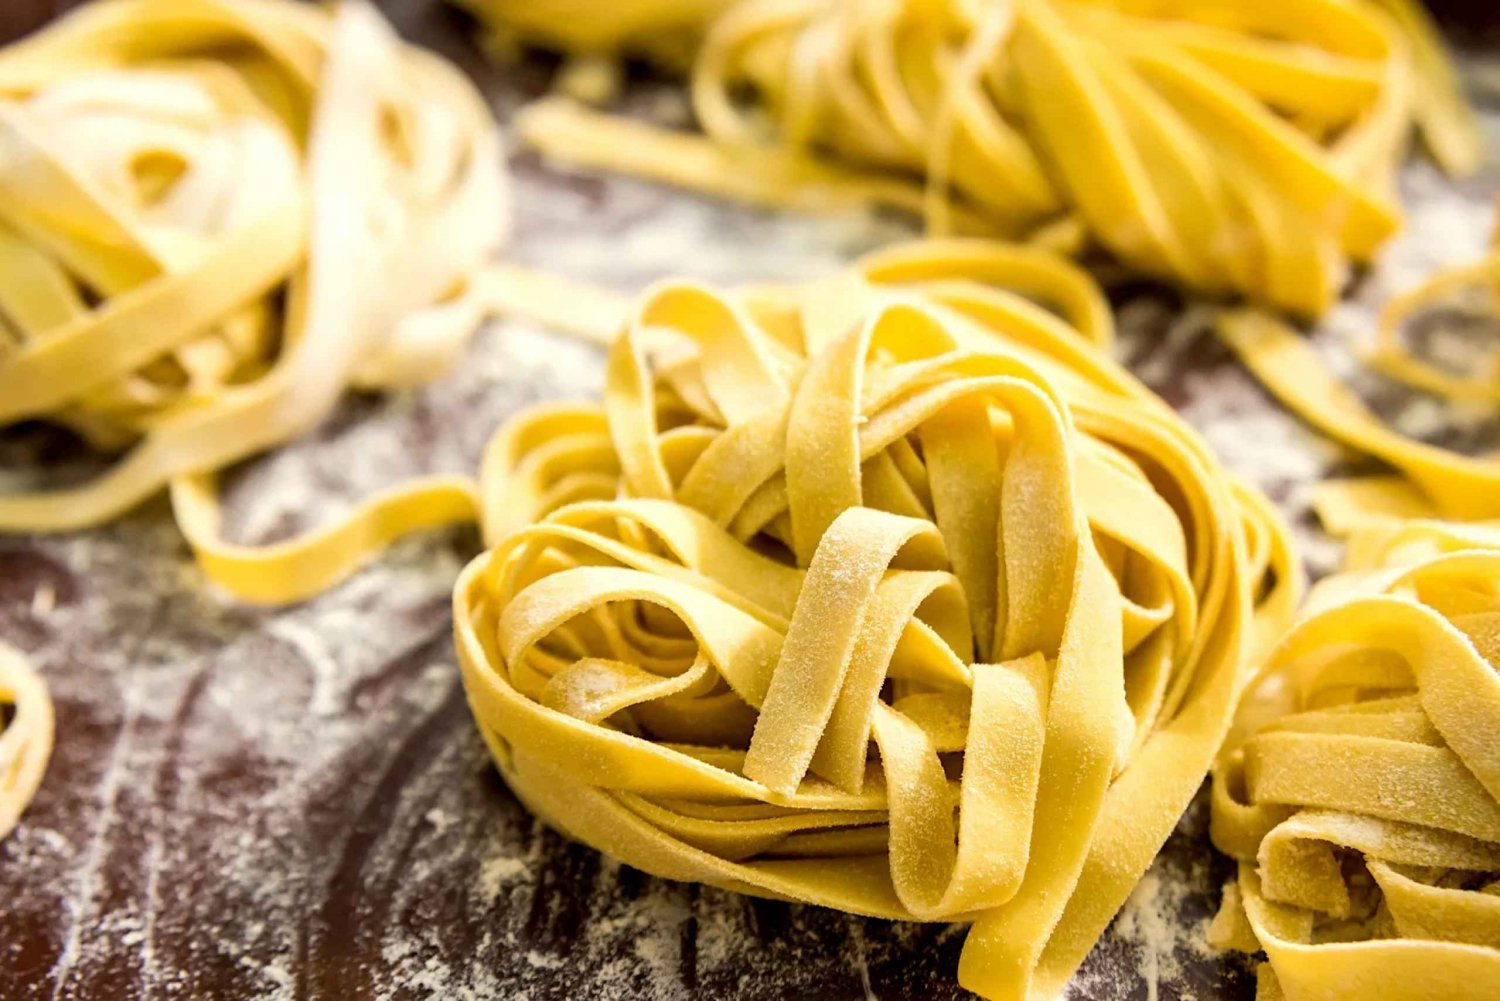 Palermo: Mesterklasse med smaksprøver laget av pasta